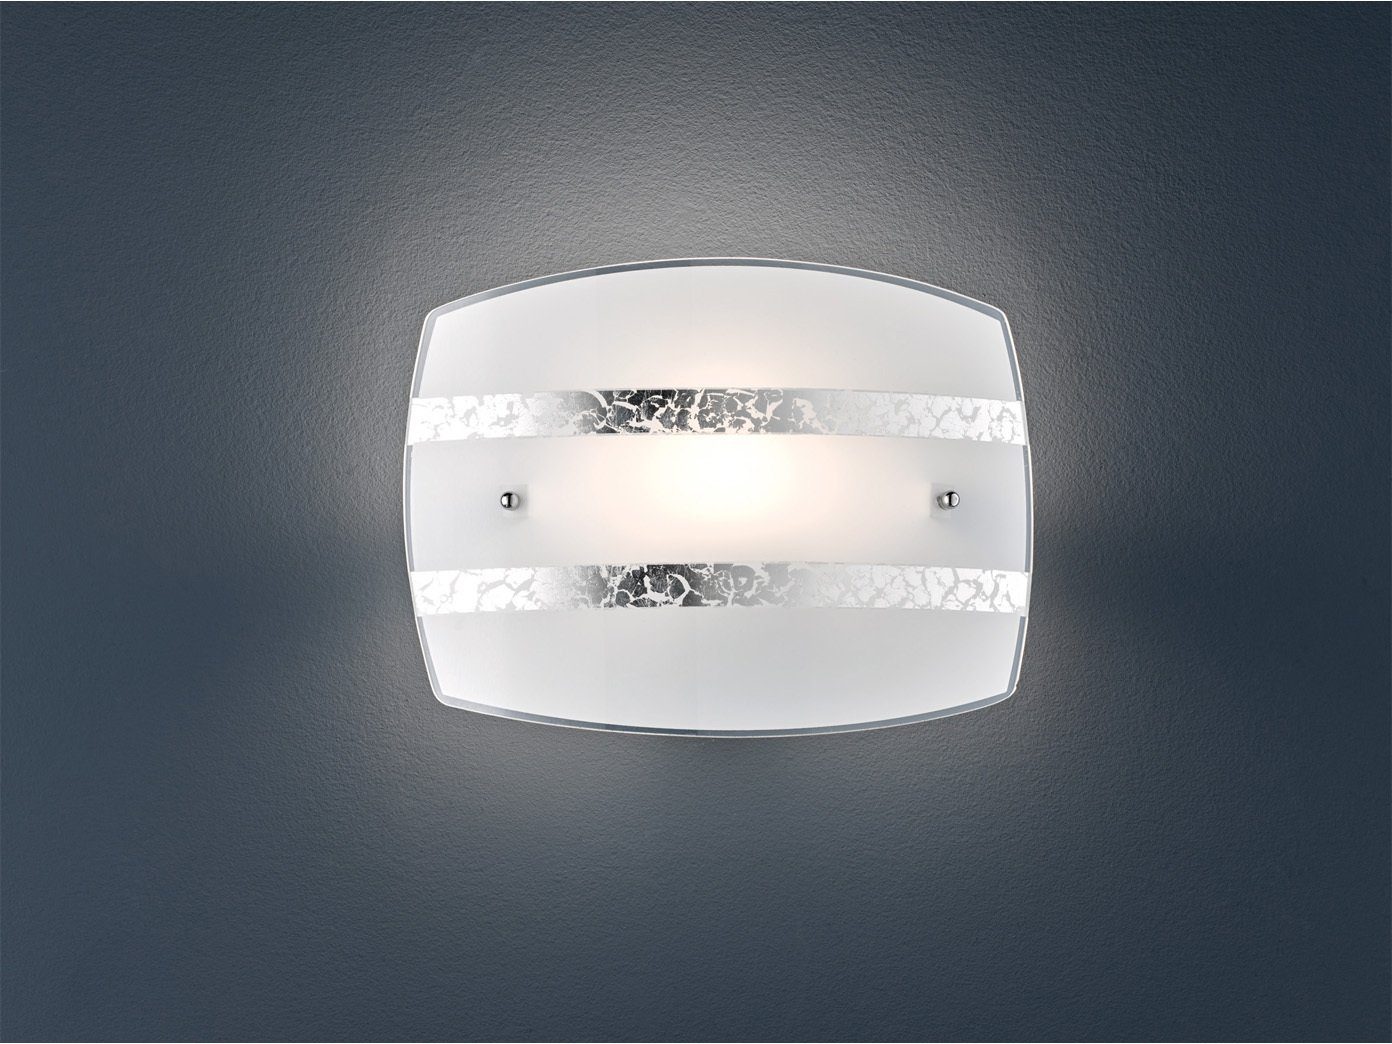 meineWunschleuchte LED Wandleuchte, LED wechselbar, Warmweiß, innen Лампыschirme Milch-glas mit Silber Dekor Design, Breite 30cm